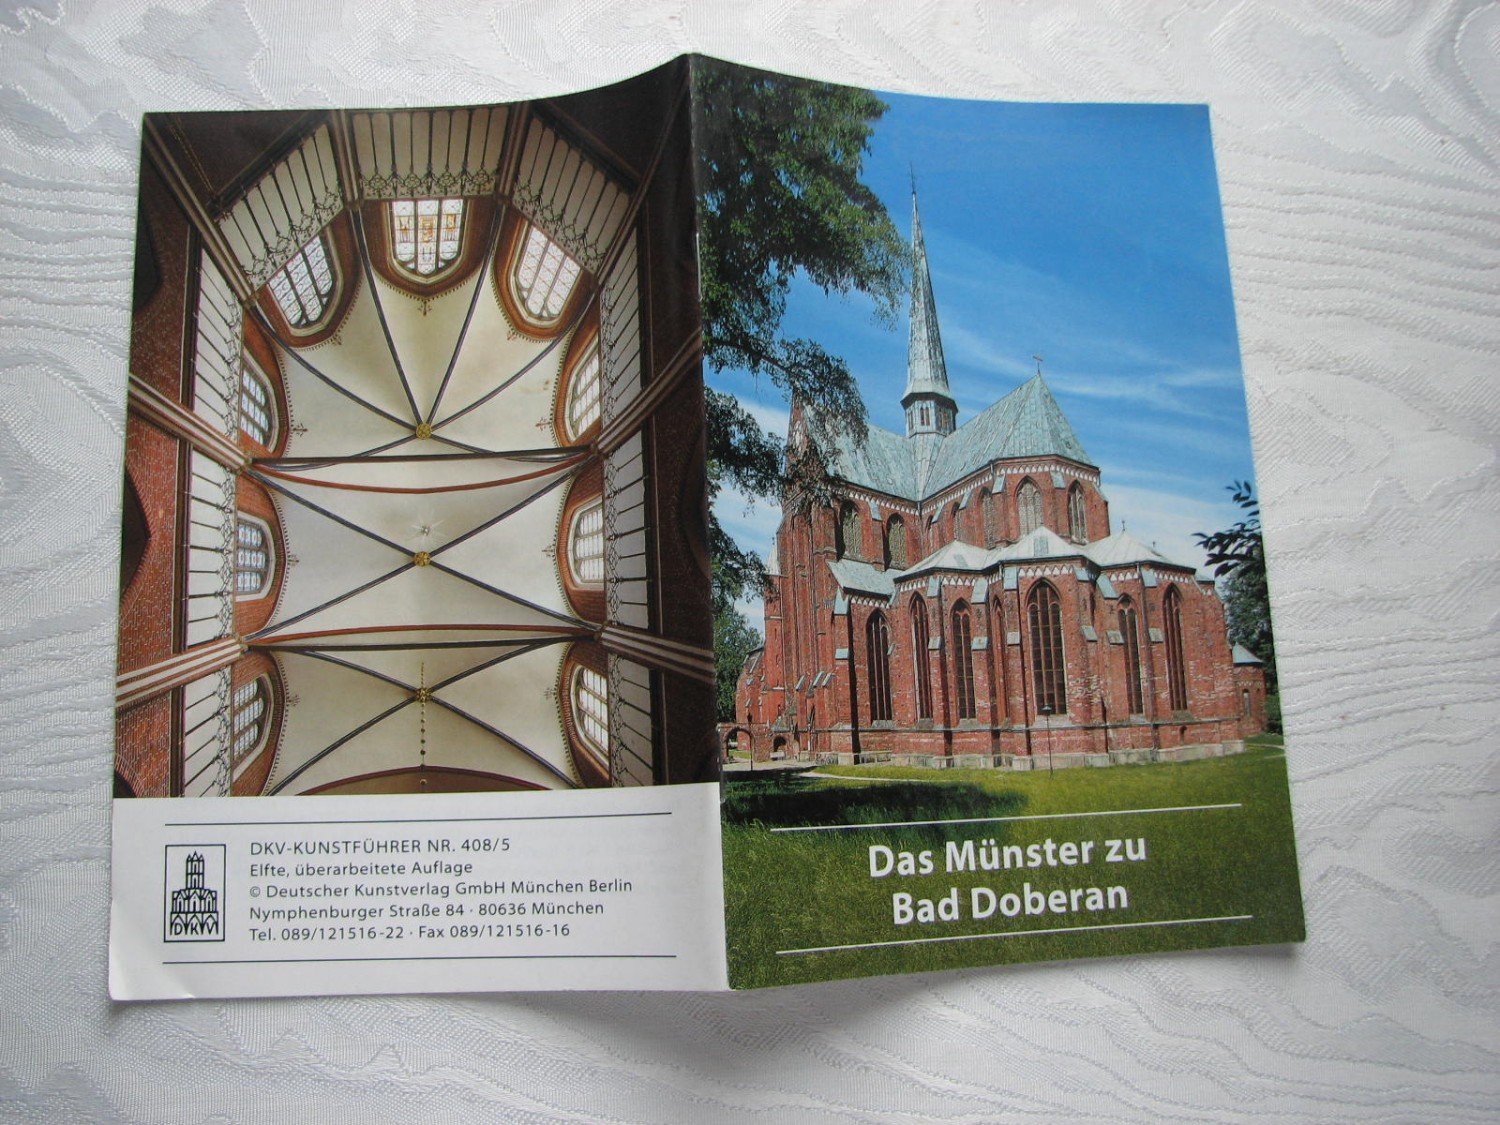 Das Munster Zu Bad Doberan Carl Christian Schmidt Buch Gebraucht Kaufen A02bjxk401zzy